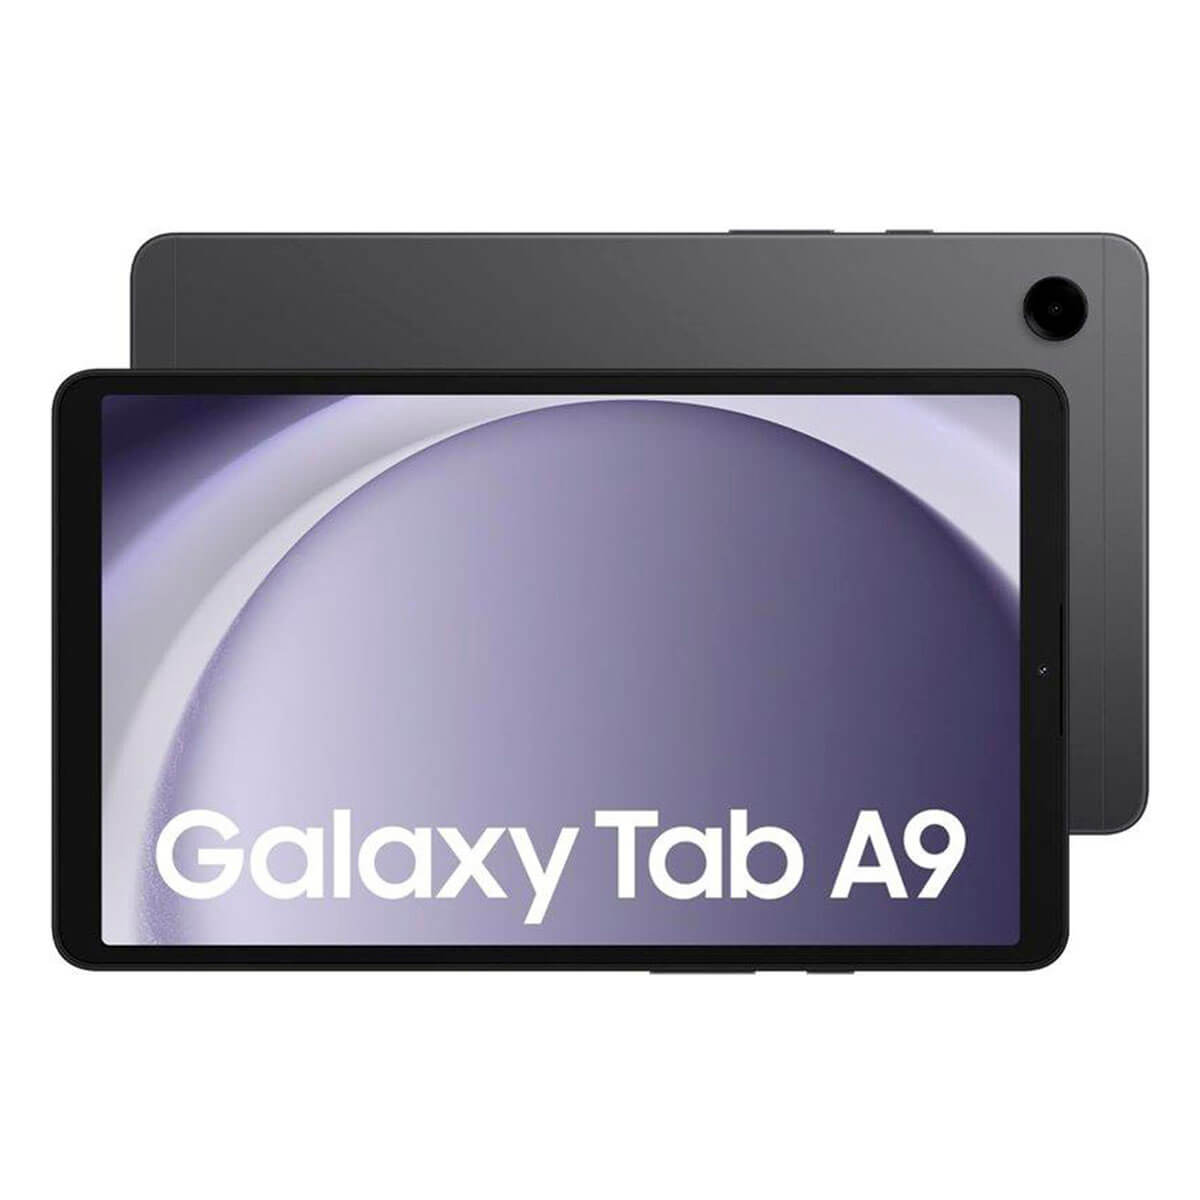 SAMSUNG Galaxy Tab A9, Tablet, 64 GB, Grau 8,7 Zoll